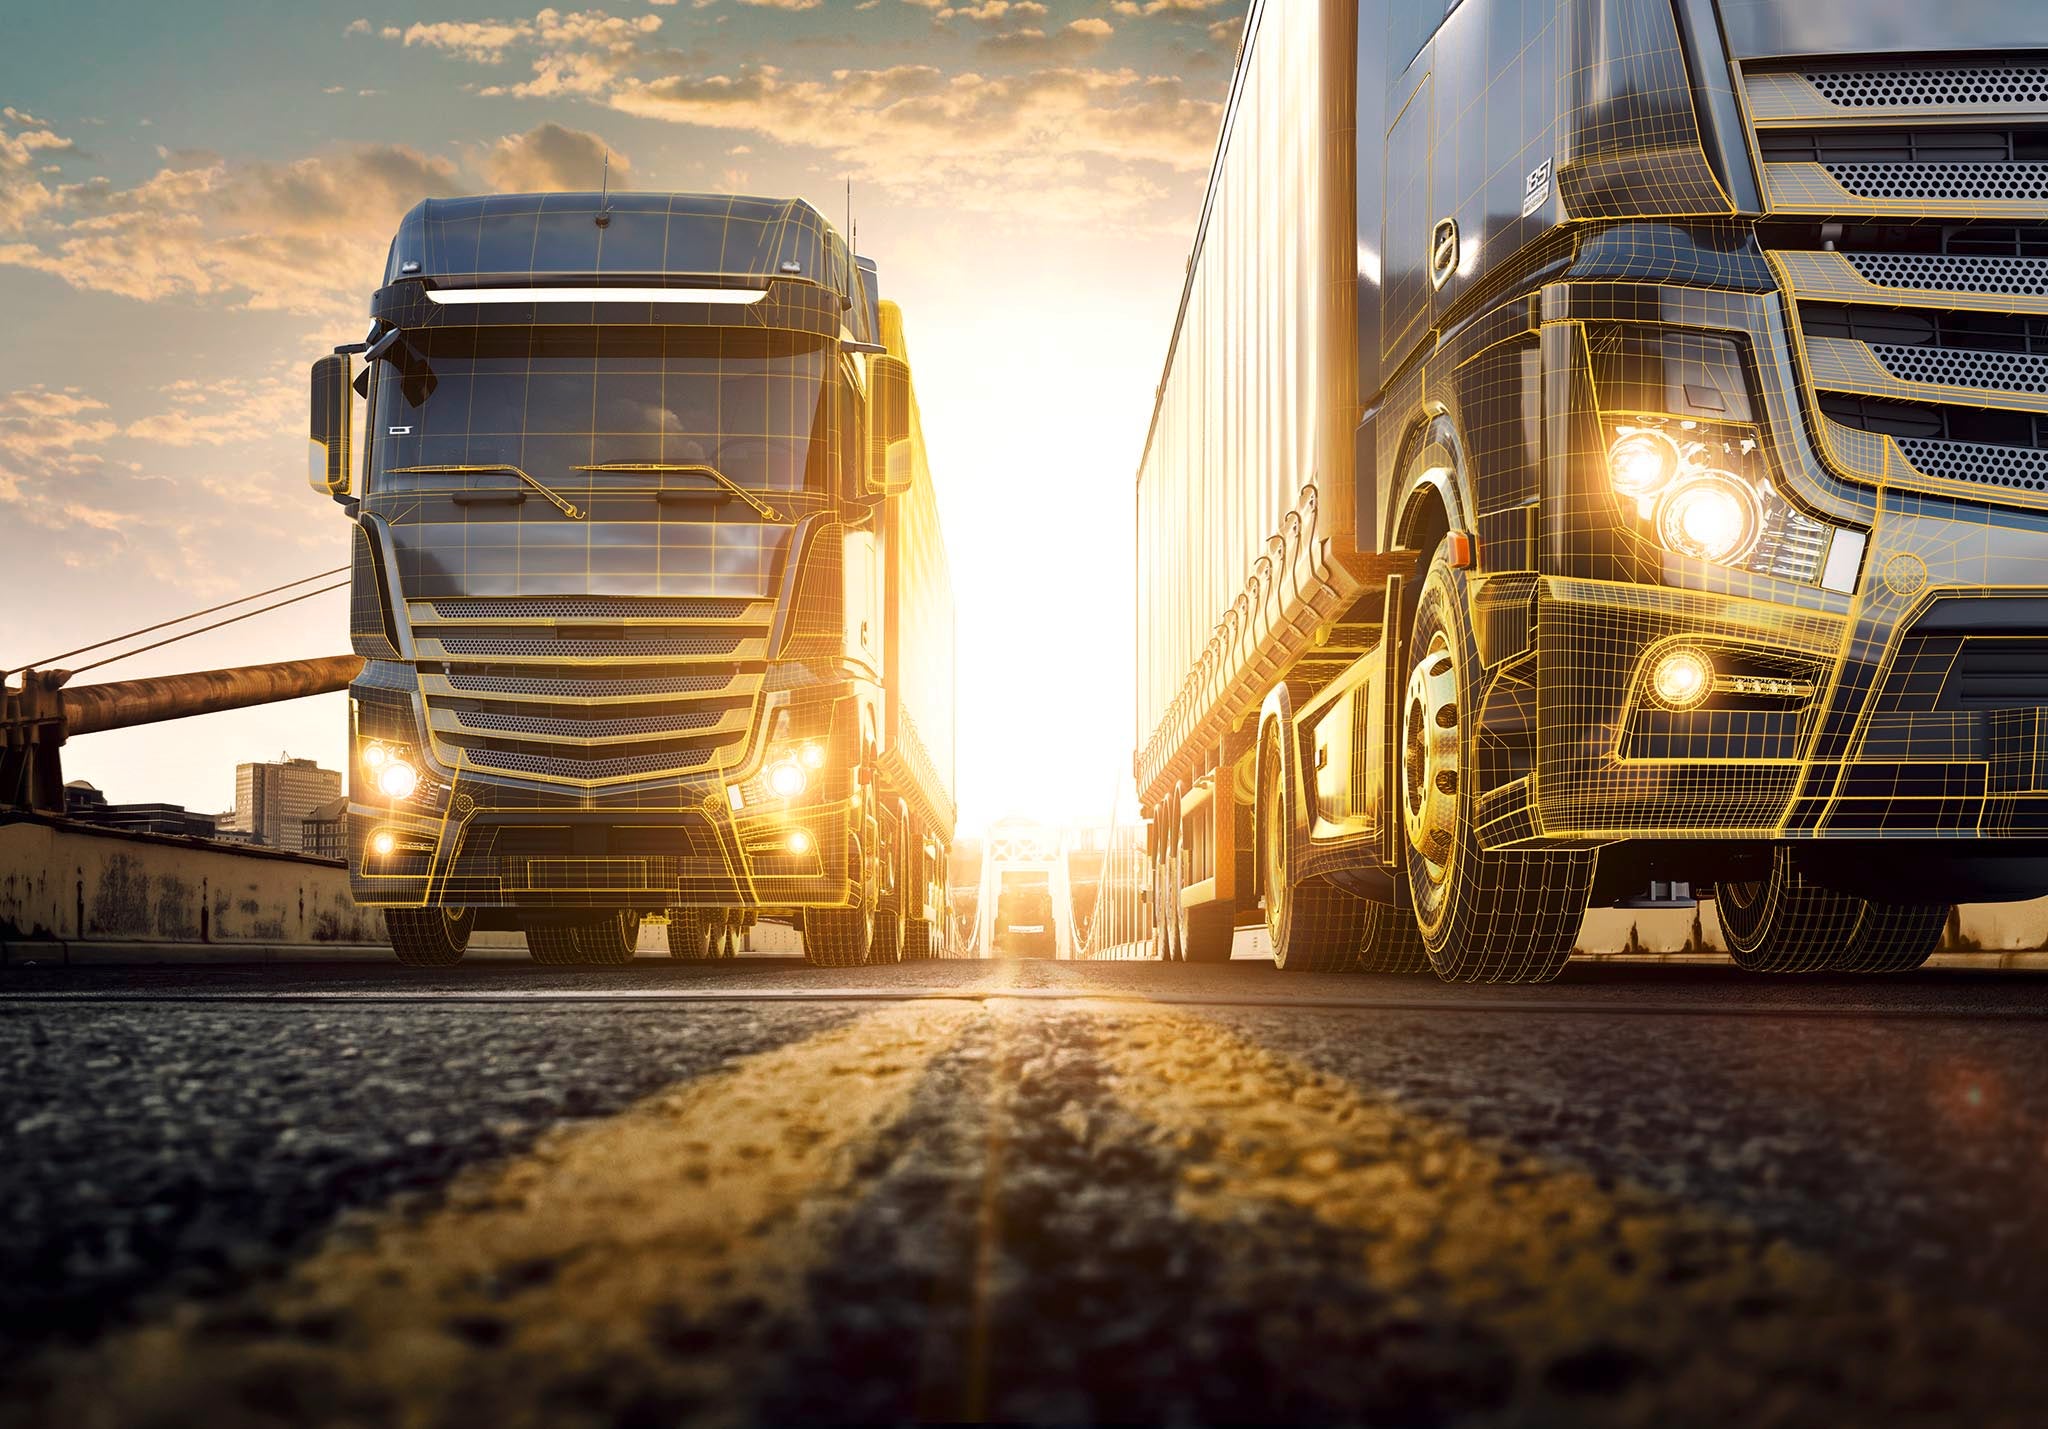 (Imagem com foto de dois caminhões entregando contêineres em uma cidade e algumas linhas laranjas simbolizando tecnologia)